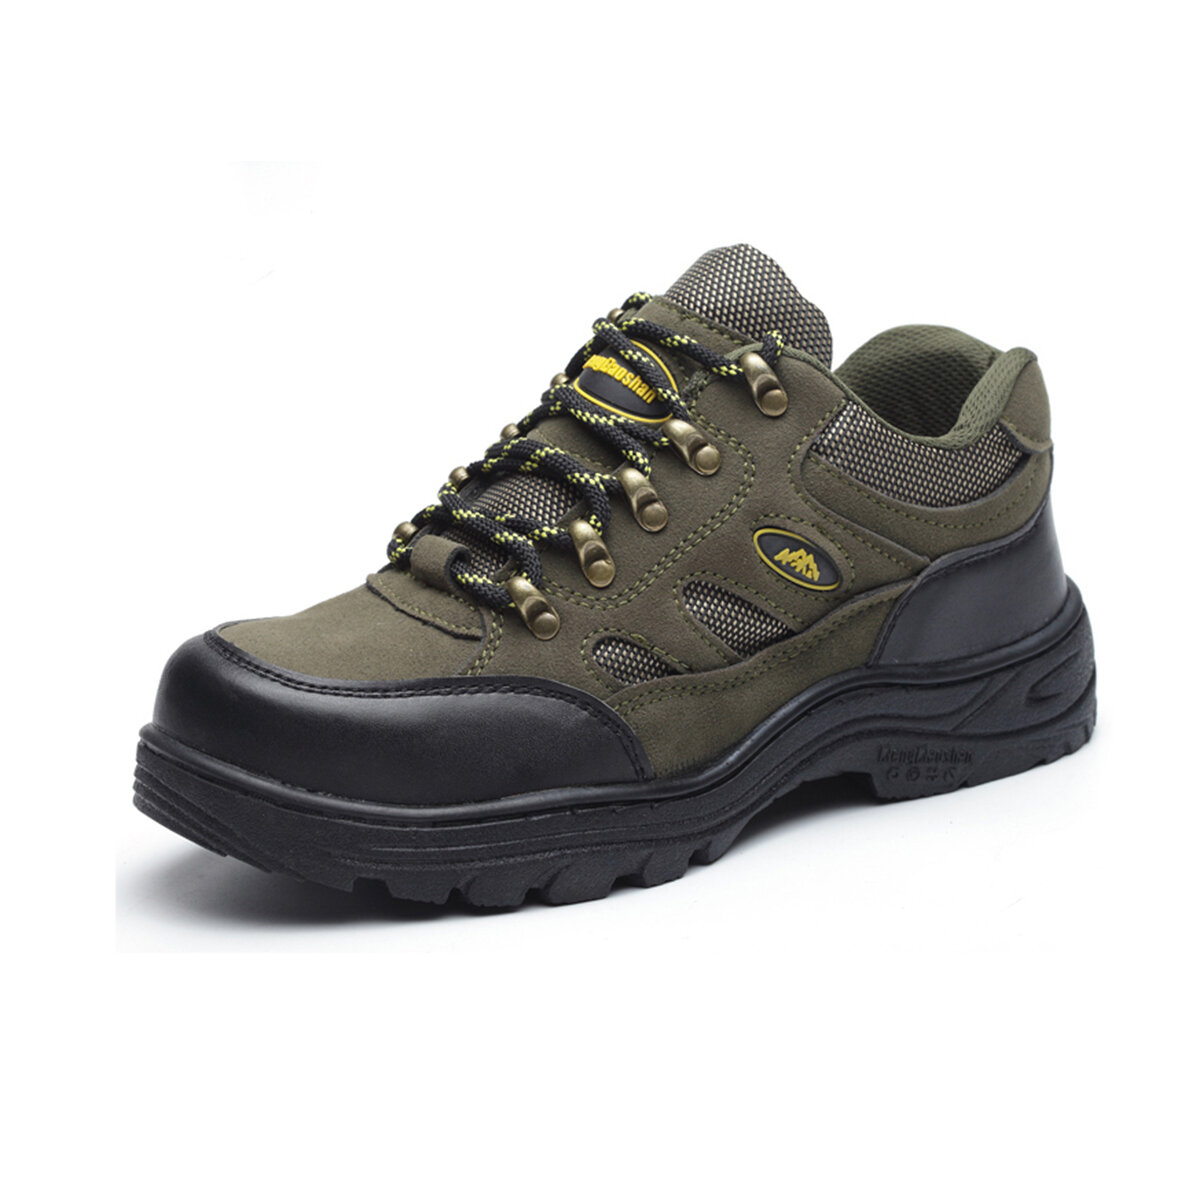 Ho scarpe da lavoro Tengoo di sicurezza in acciaio, antiscivolo, impermeabili, adatte per escursioni, corsa e campeggio.